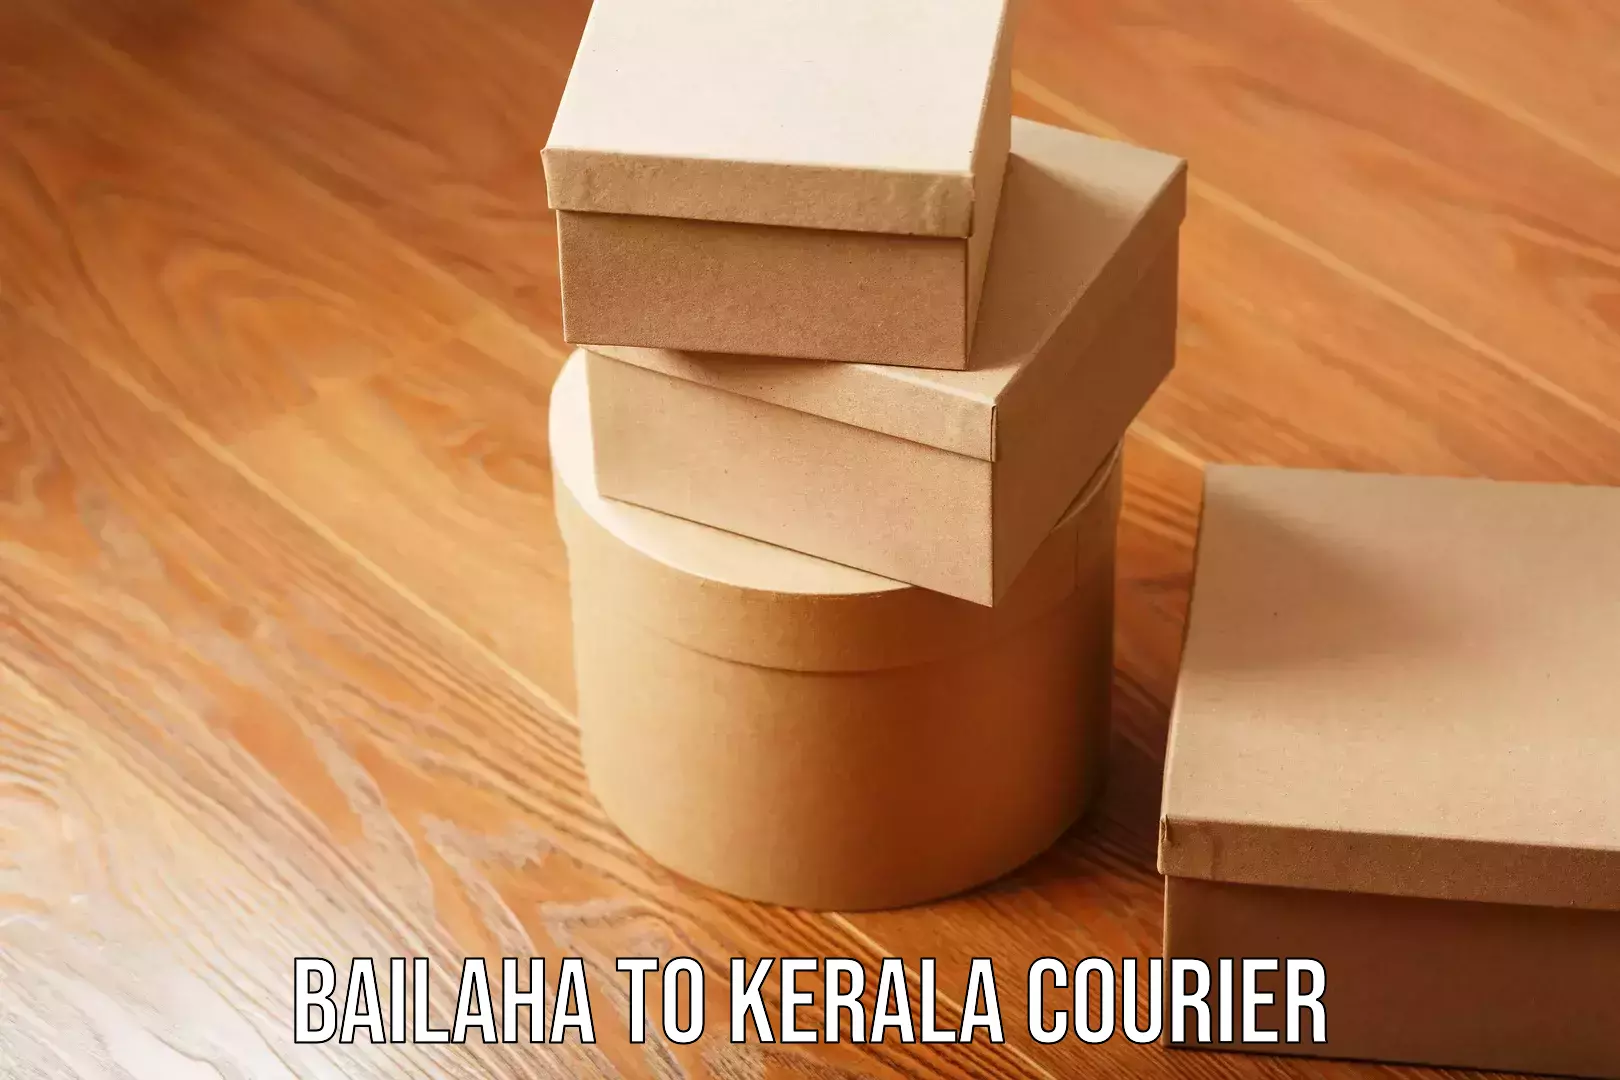 Cross-border shipping Bailaha to Kerala